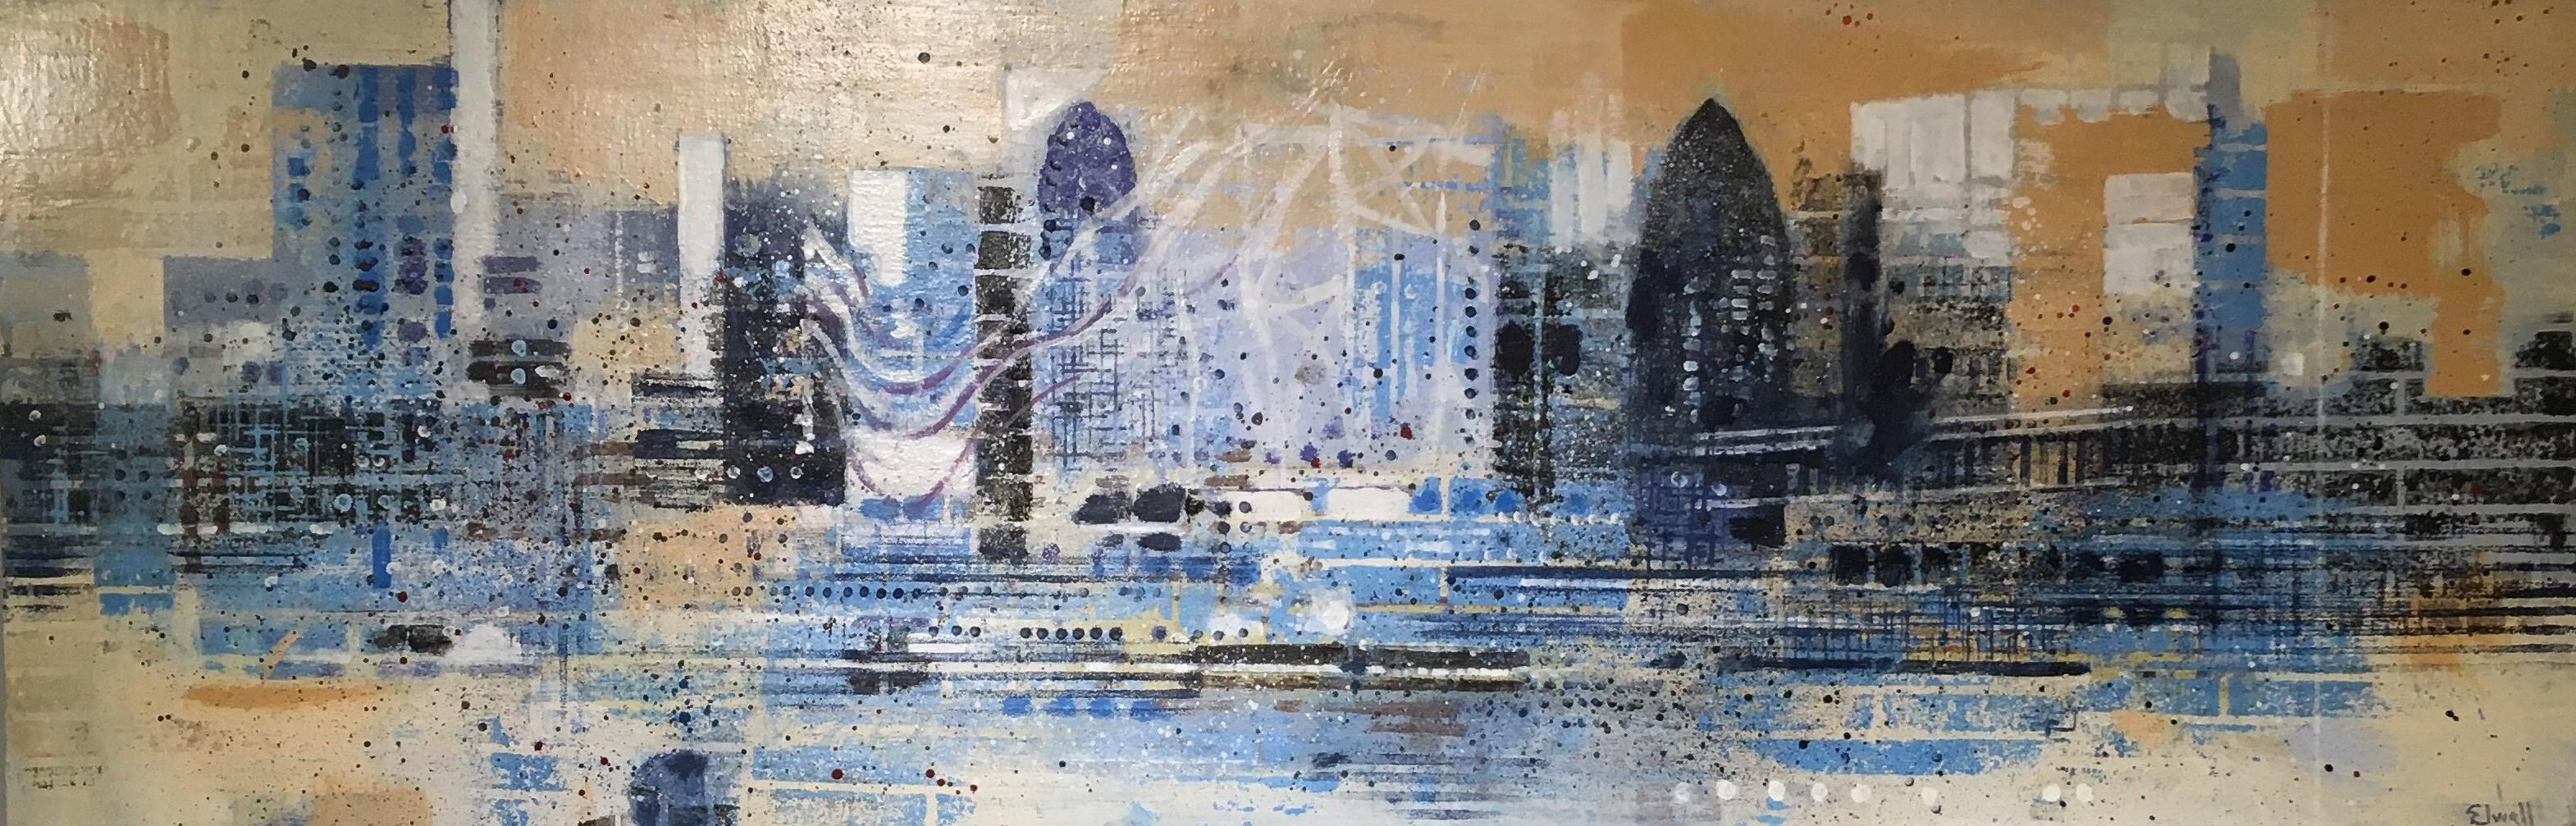 Figurative Painting Brian Elwell - La Tamise bleue - paysage panoramatique, paysage urbain, bâtiments de la Tamise de Londres, vue sur le bleu